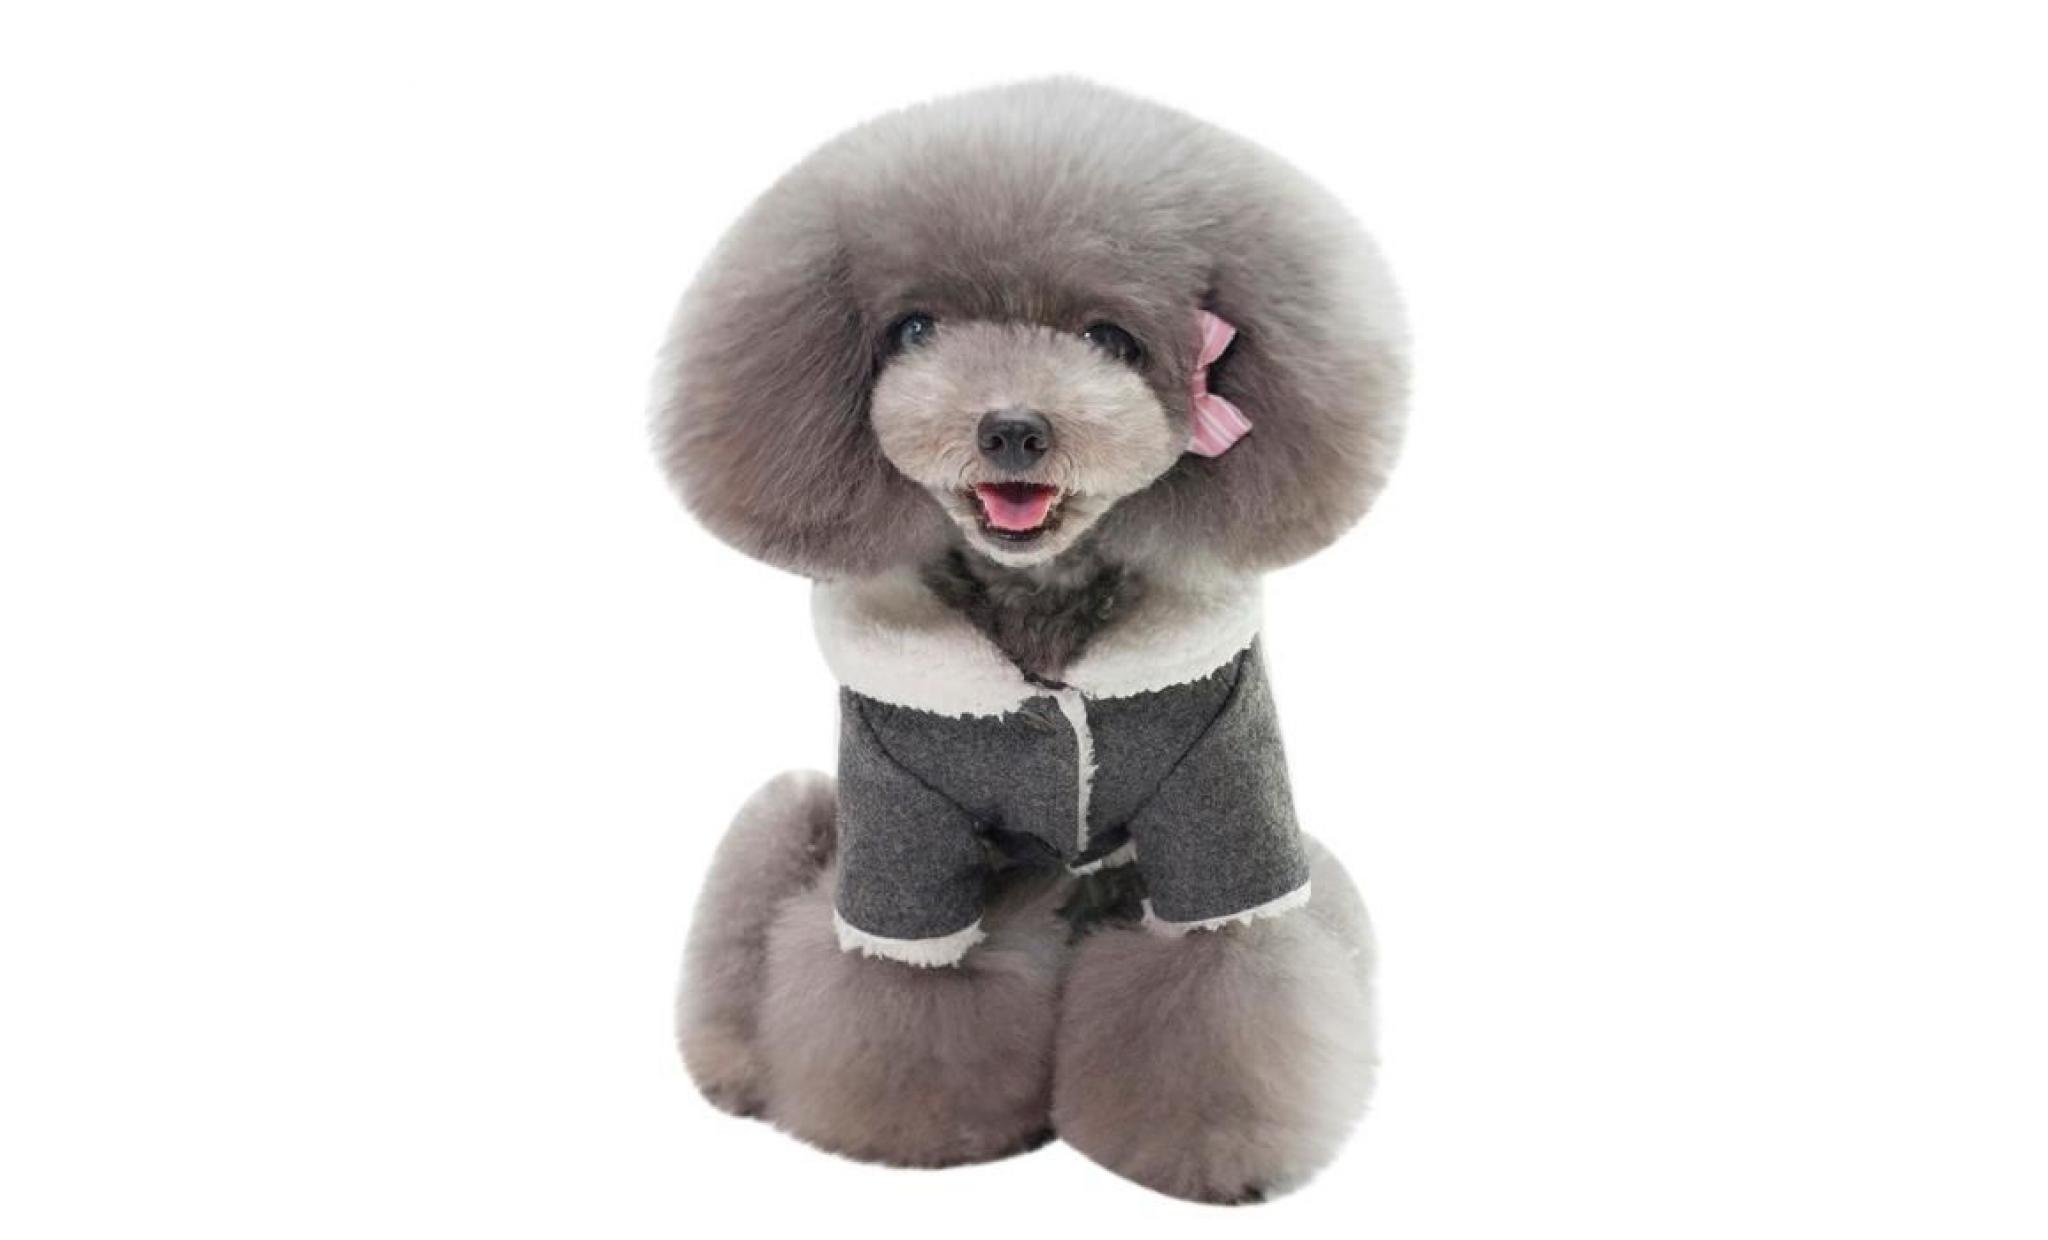 noir code m gris dogbaby nouveaux vêtements pour chiens animaux d'hiver usine spot directs modèles d'explosion du commerce pas cher